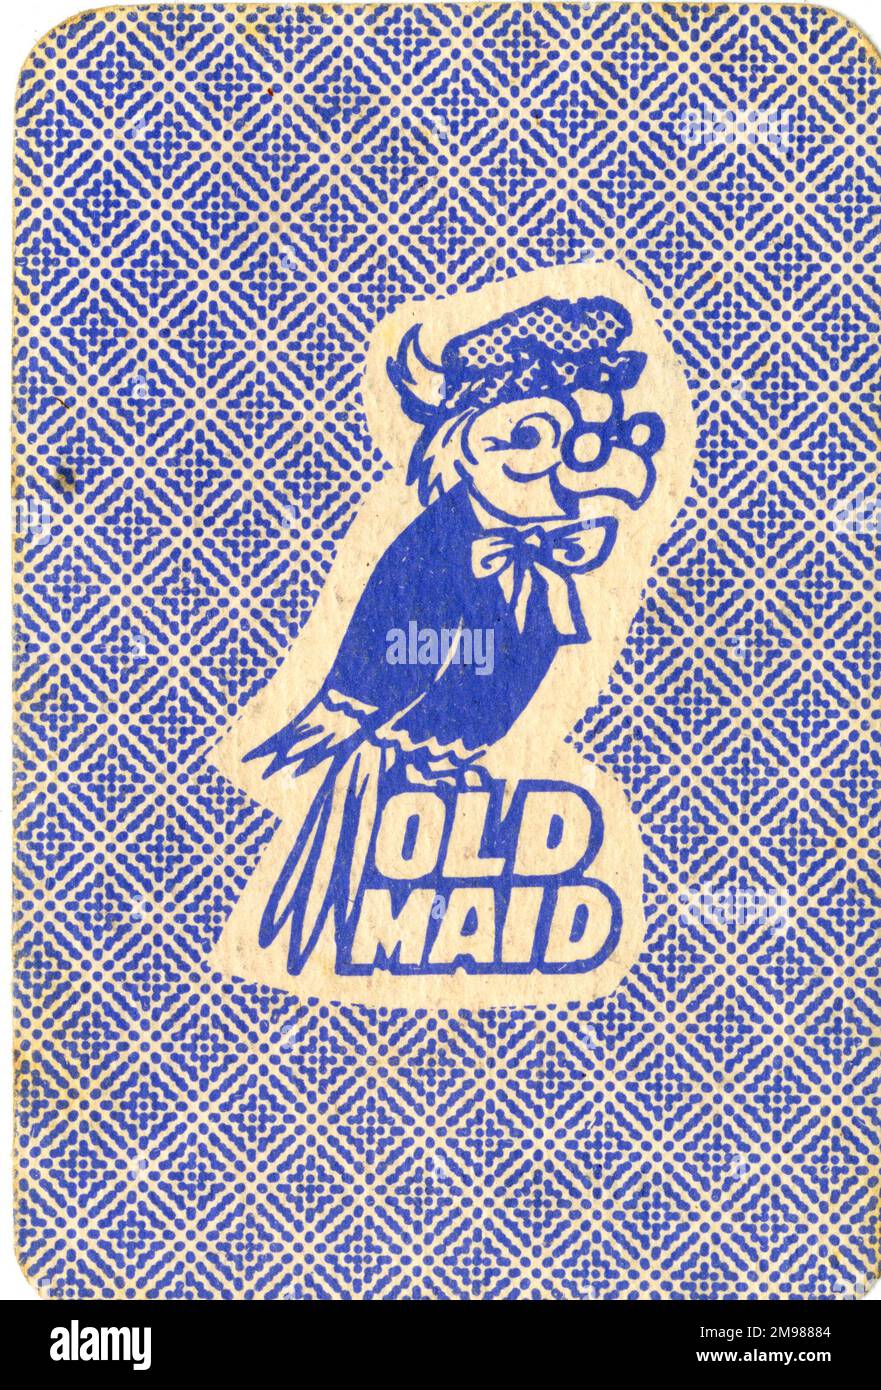 Altes Maid-Kartenspiel - Kartendesign. Stockfoto